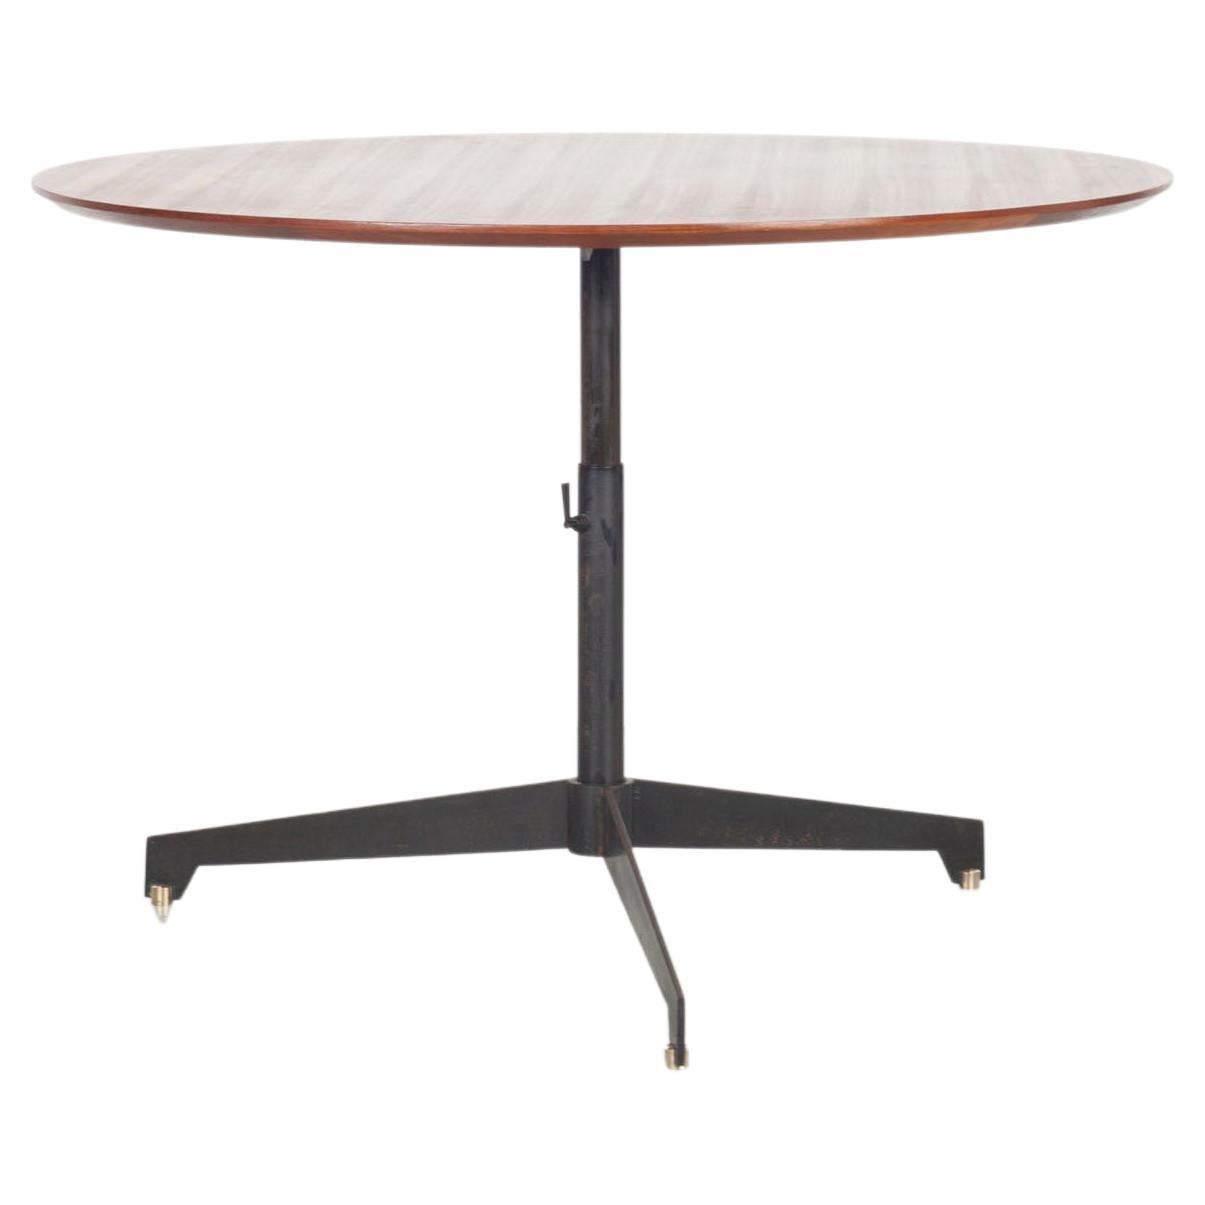 Höhenverstellbarer runder Tisch aus Teakholz aus den italienischen 50er Jahren.